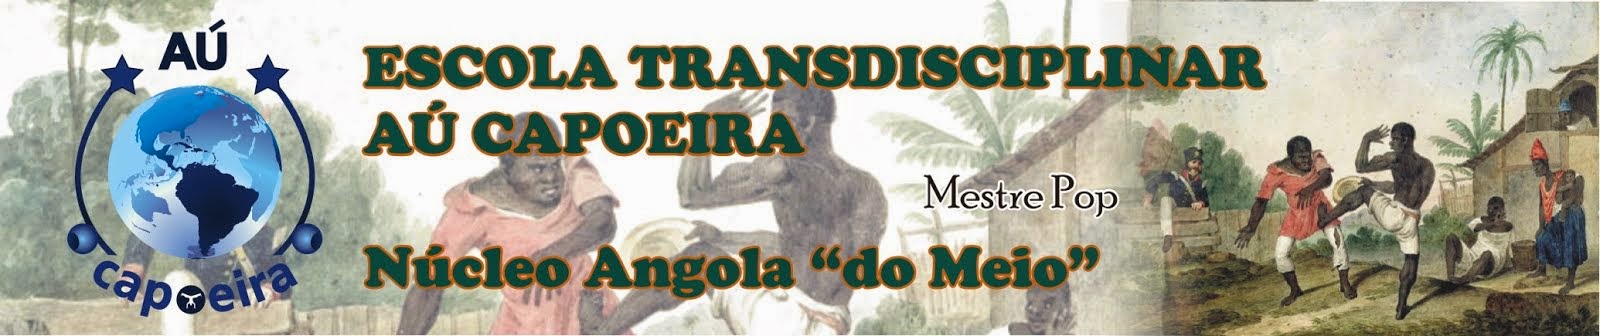 Escola Transdisciplinar Aú Capoeira - Vertente Angola do Meio